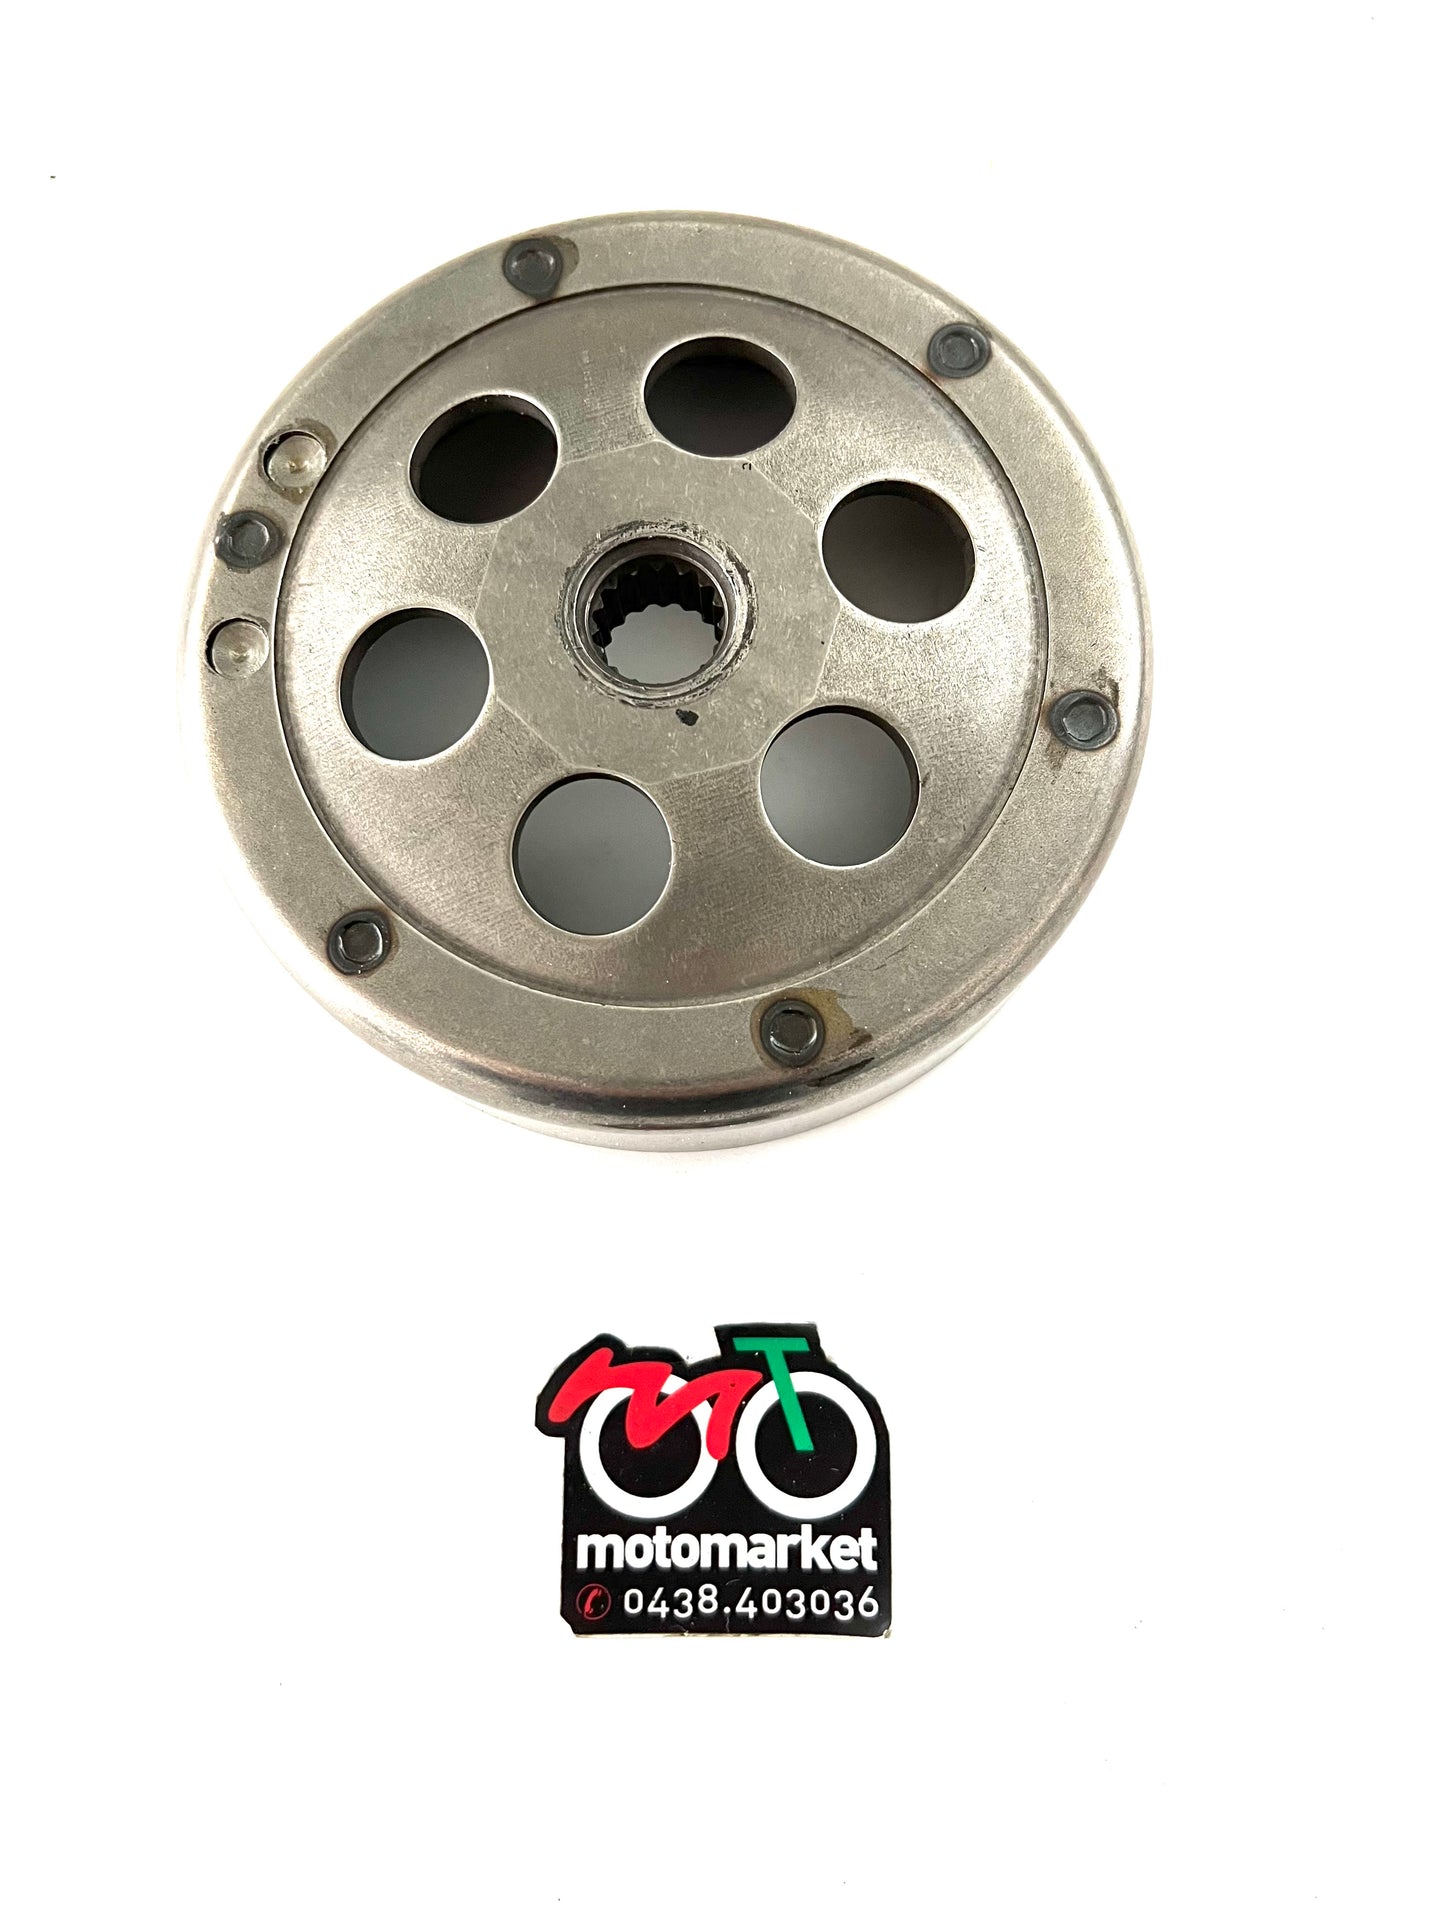 Campana frizione Yamaha Majesty-Malaguti Madison 125cc art.FZ00379